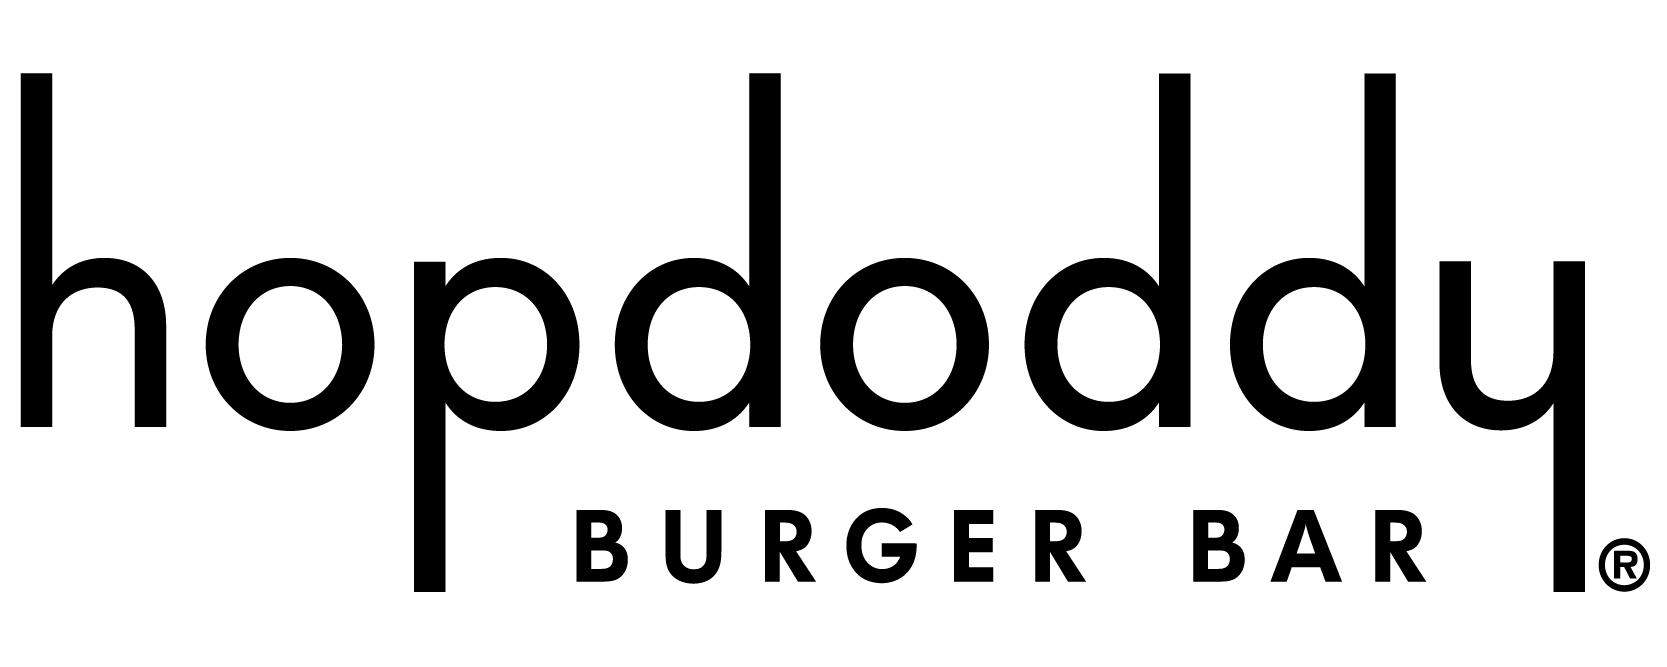 Hopdoddy Logo - Smart Horizons. Hopdoddy Burger Bar to Offer Career Online High